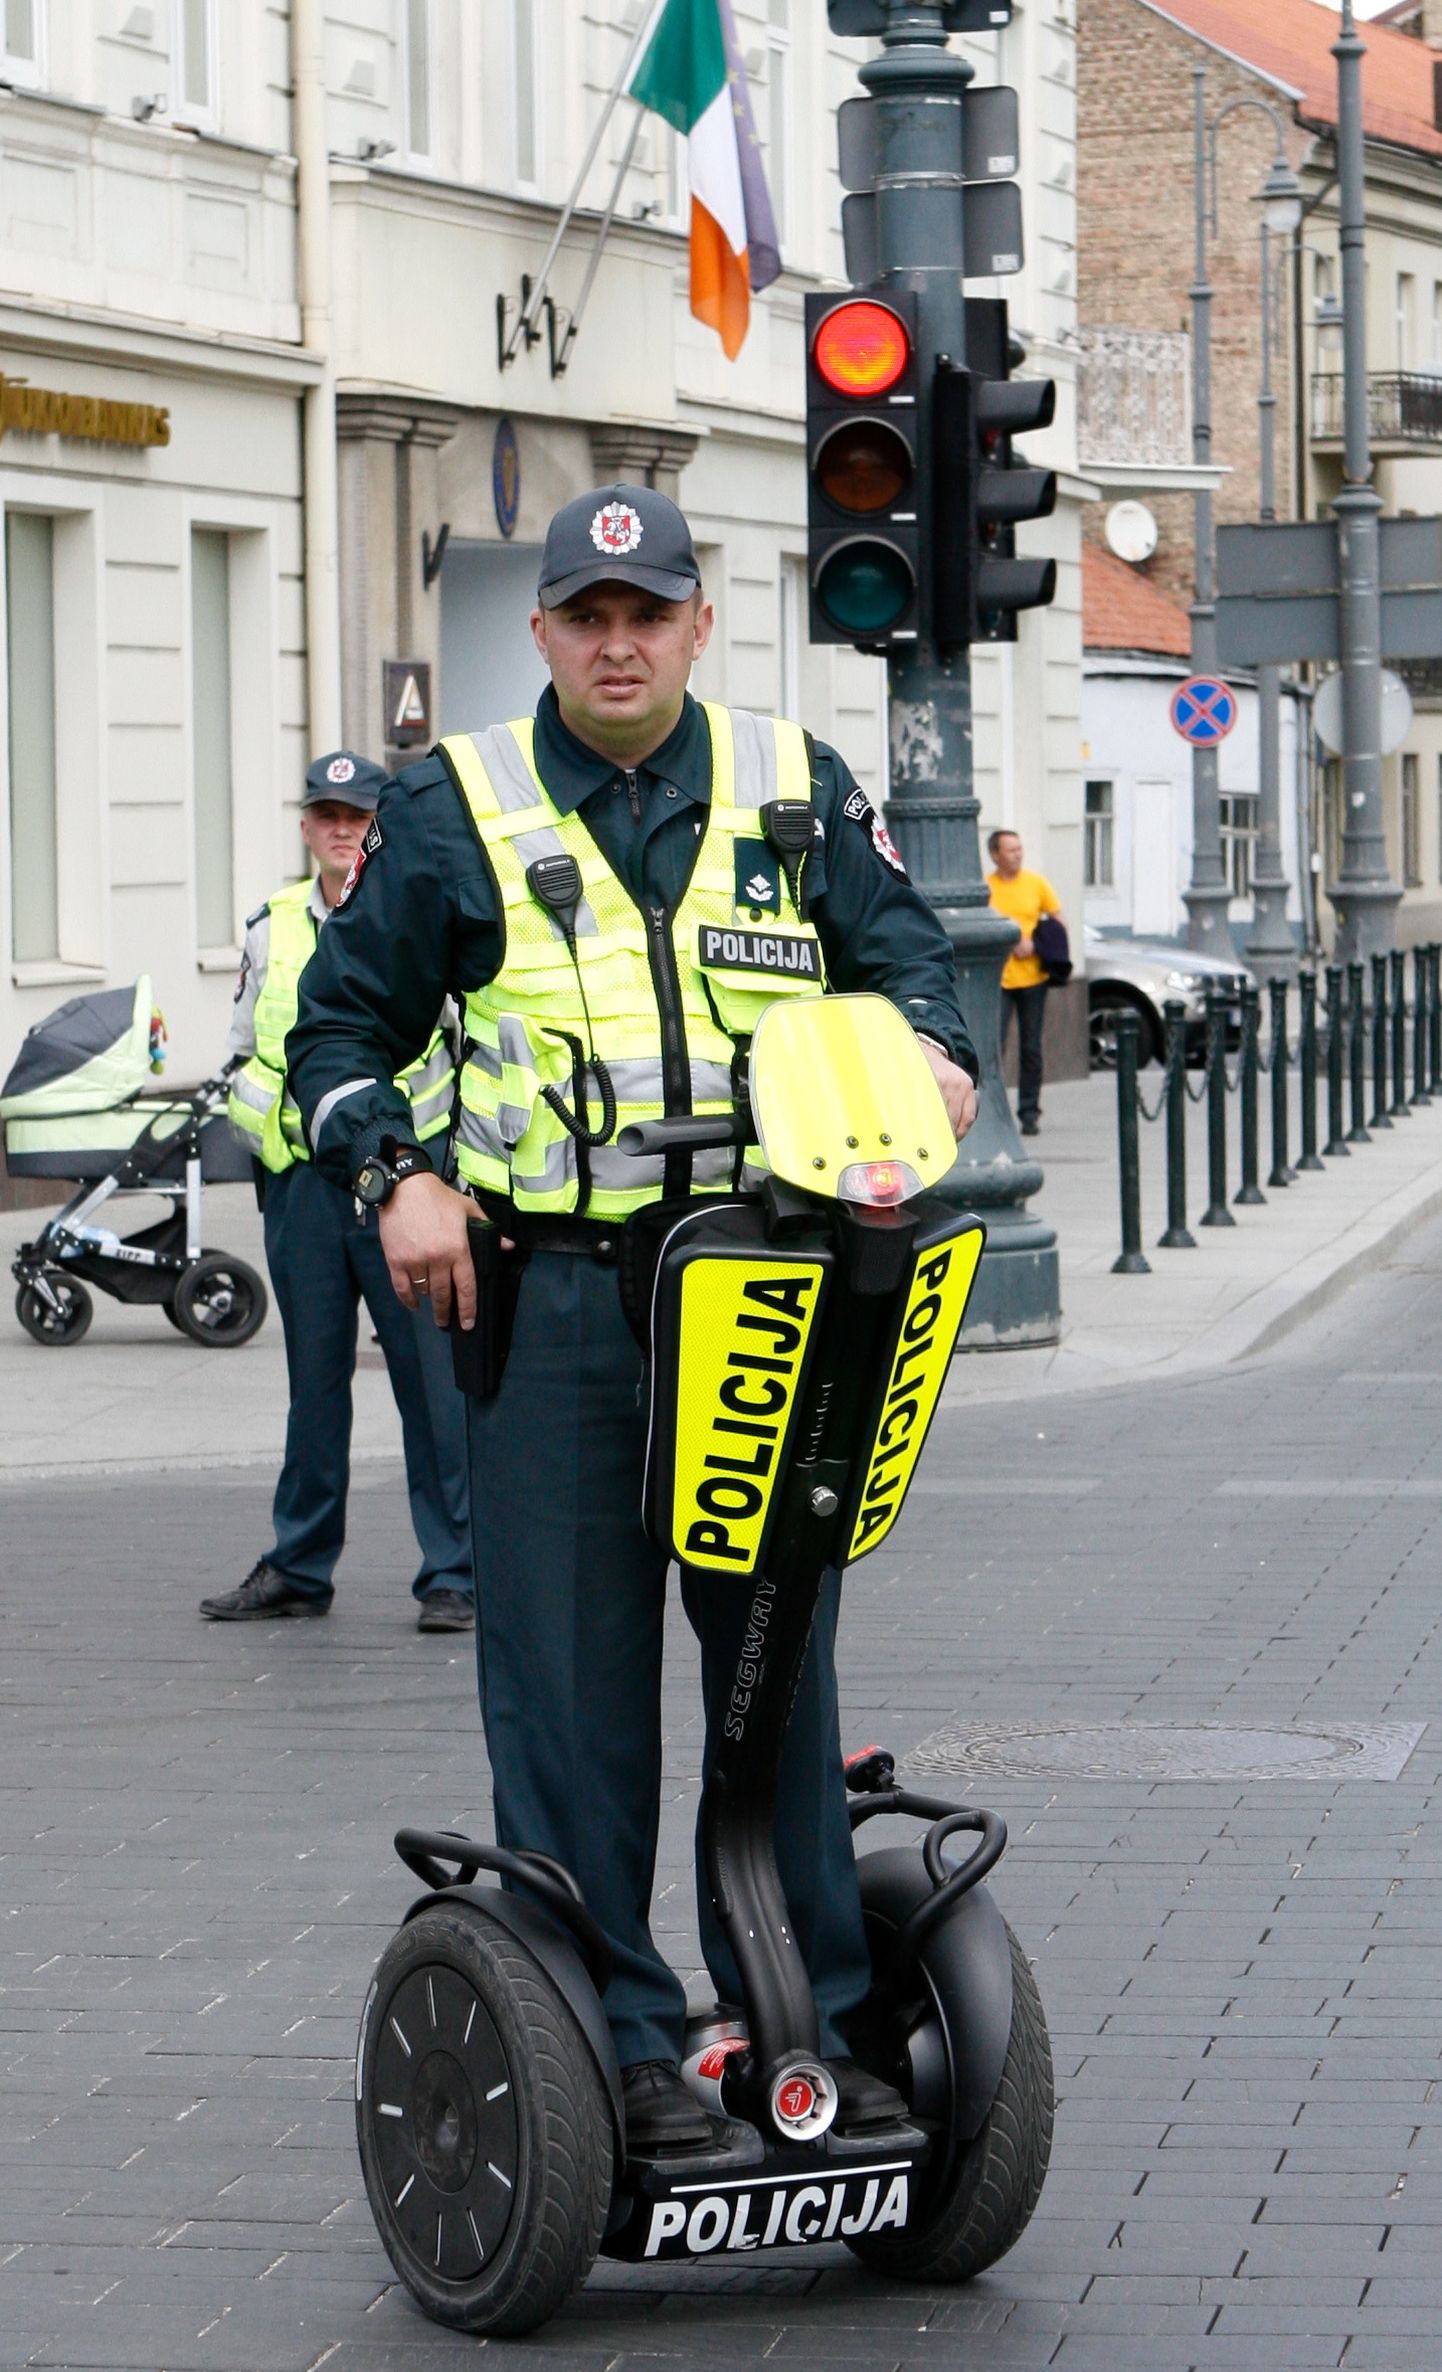 Leedu politseinik Vilniuses aastal 2012.